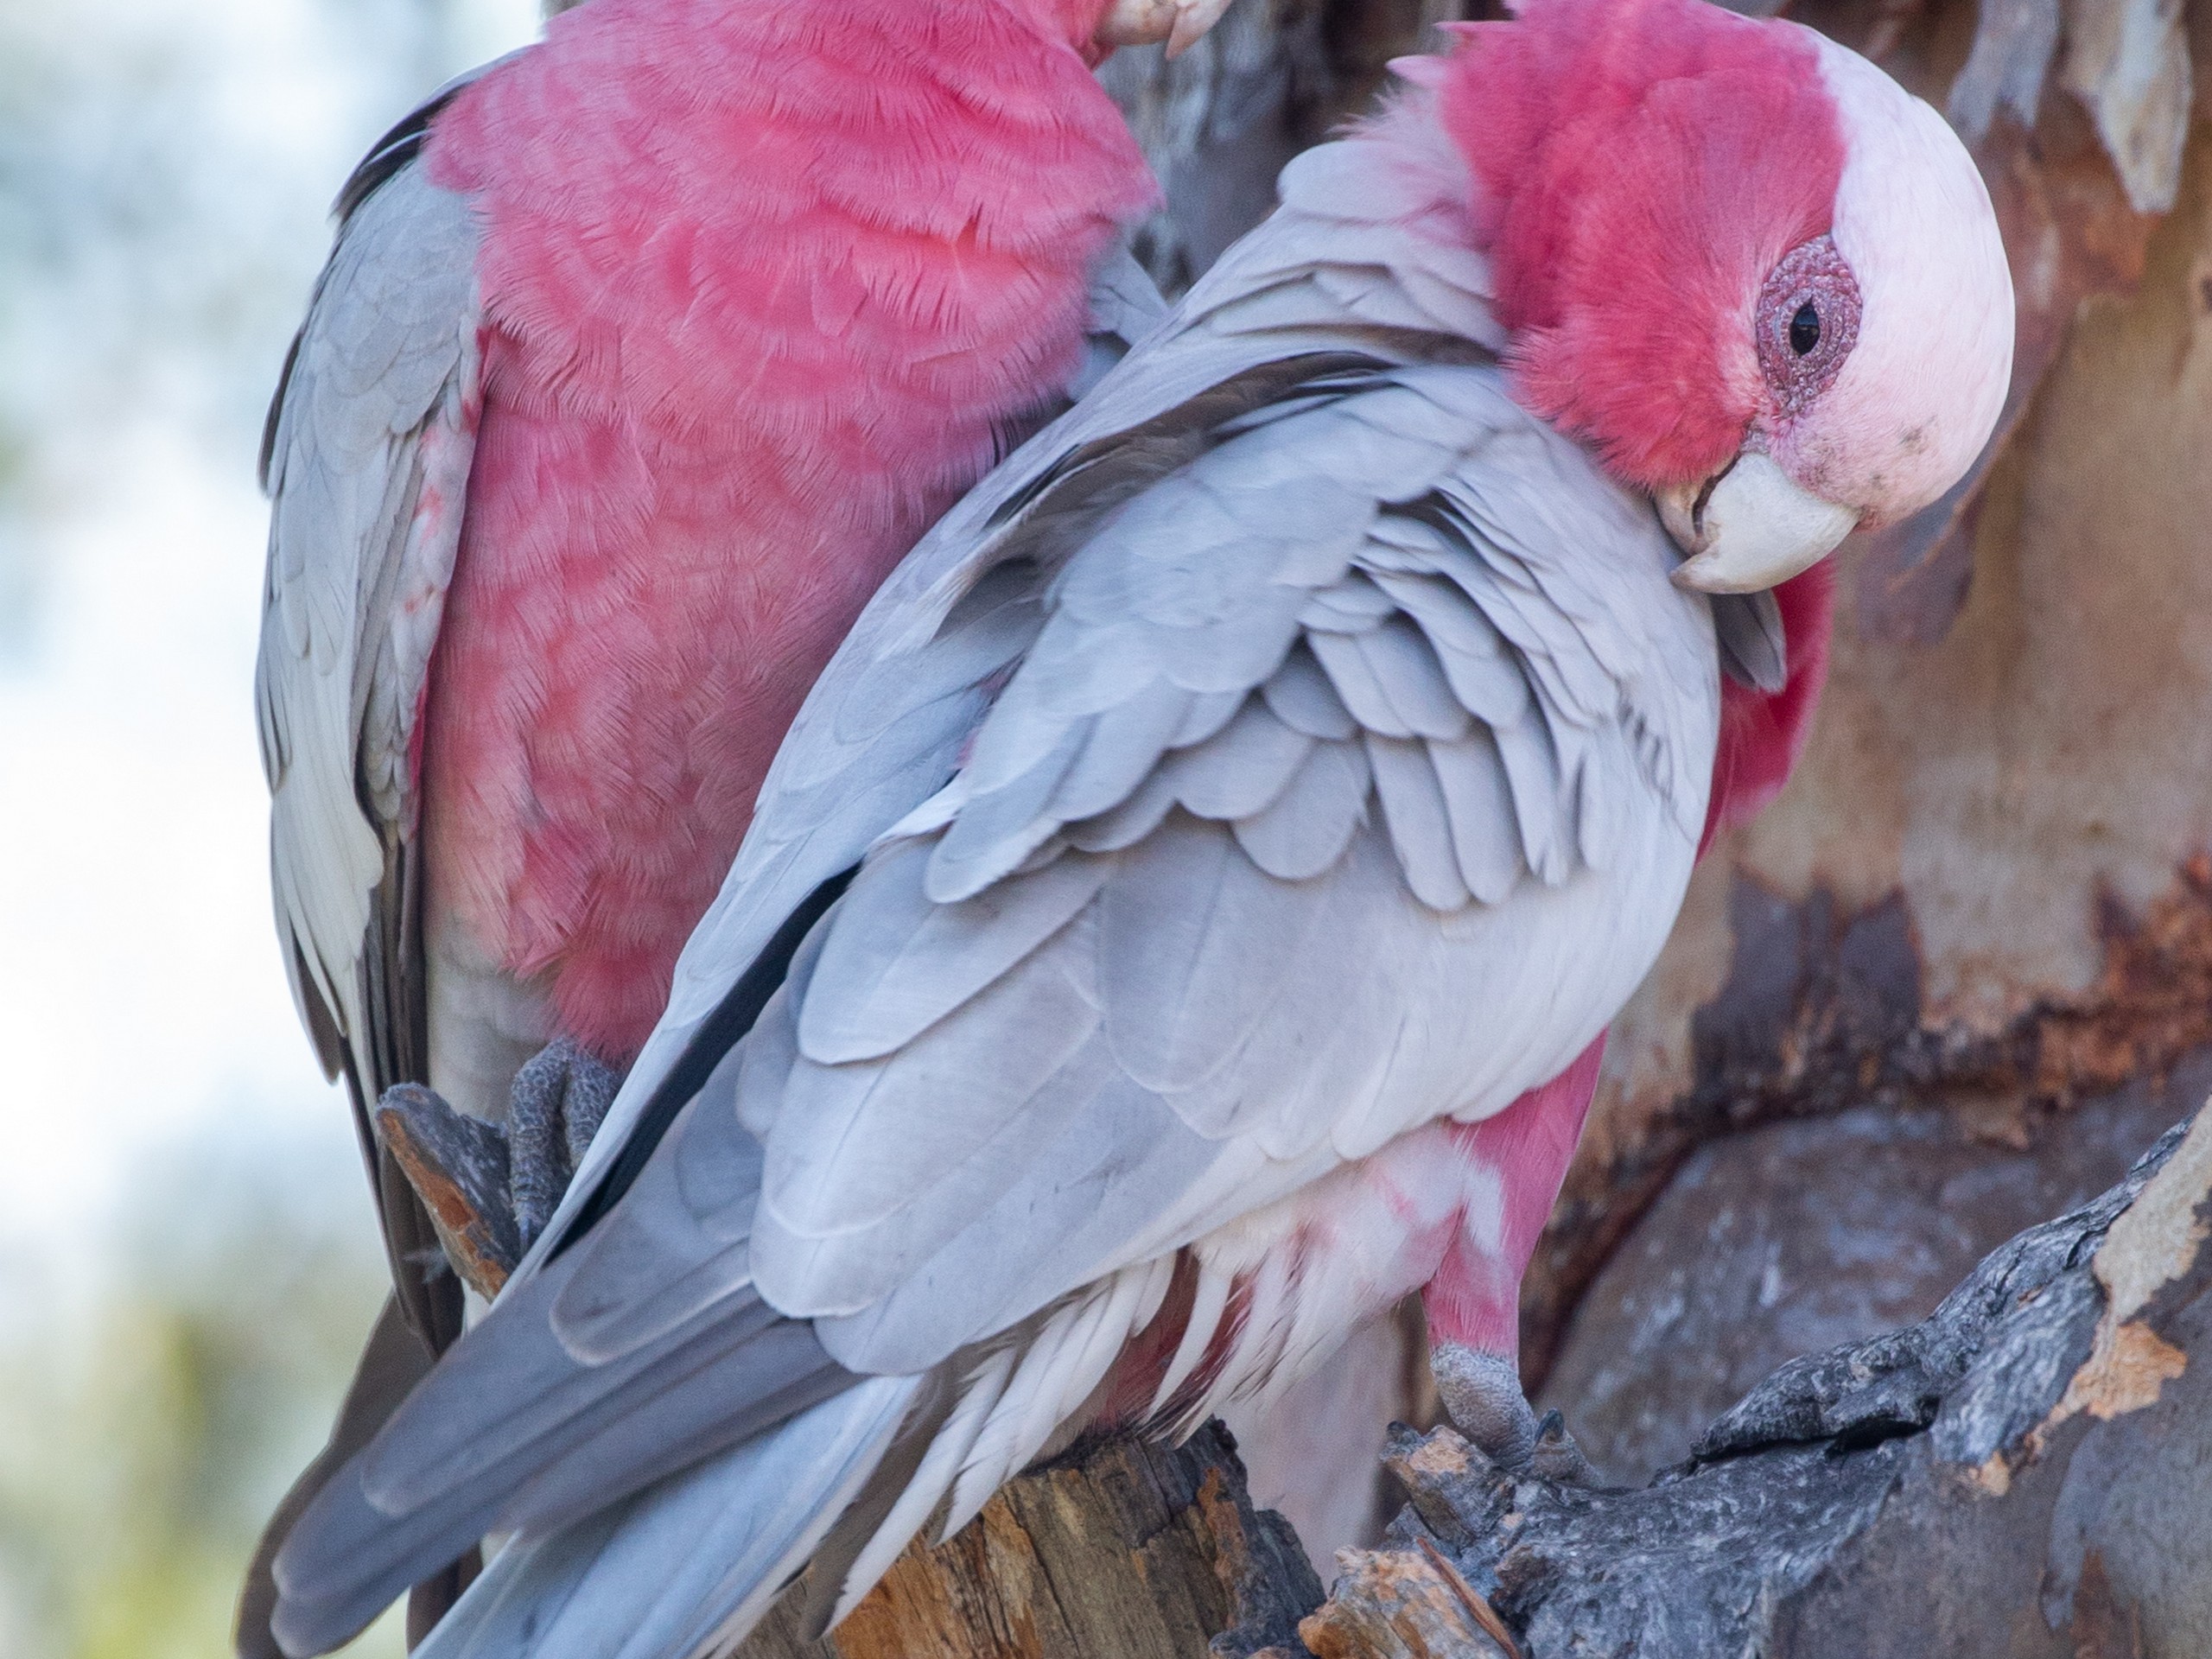 Beautiful Galah met while on a bird watching tour in Australia